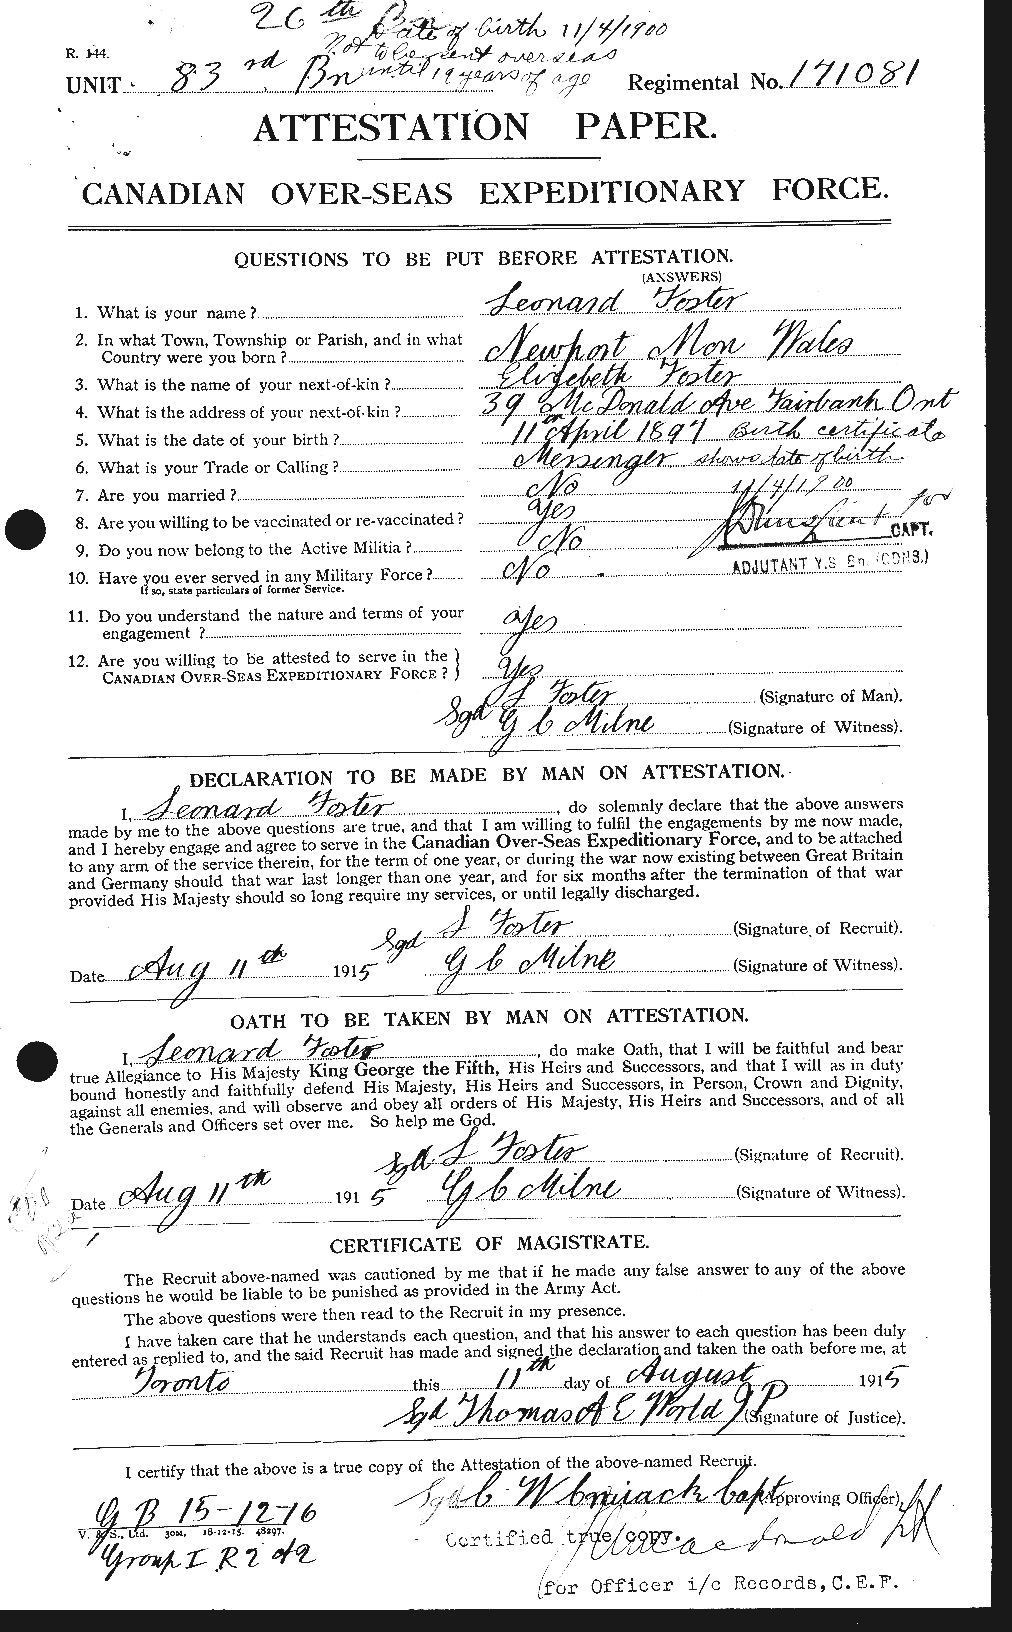 Dossiers du Personnel de la Première Guerre mondiale - CEC 333399a